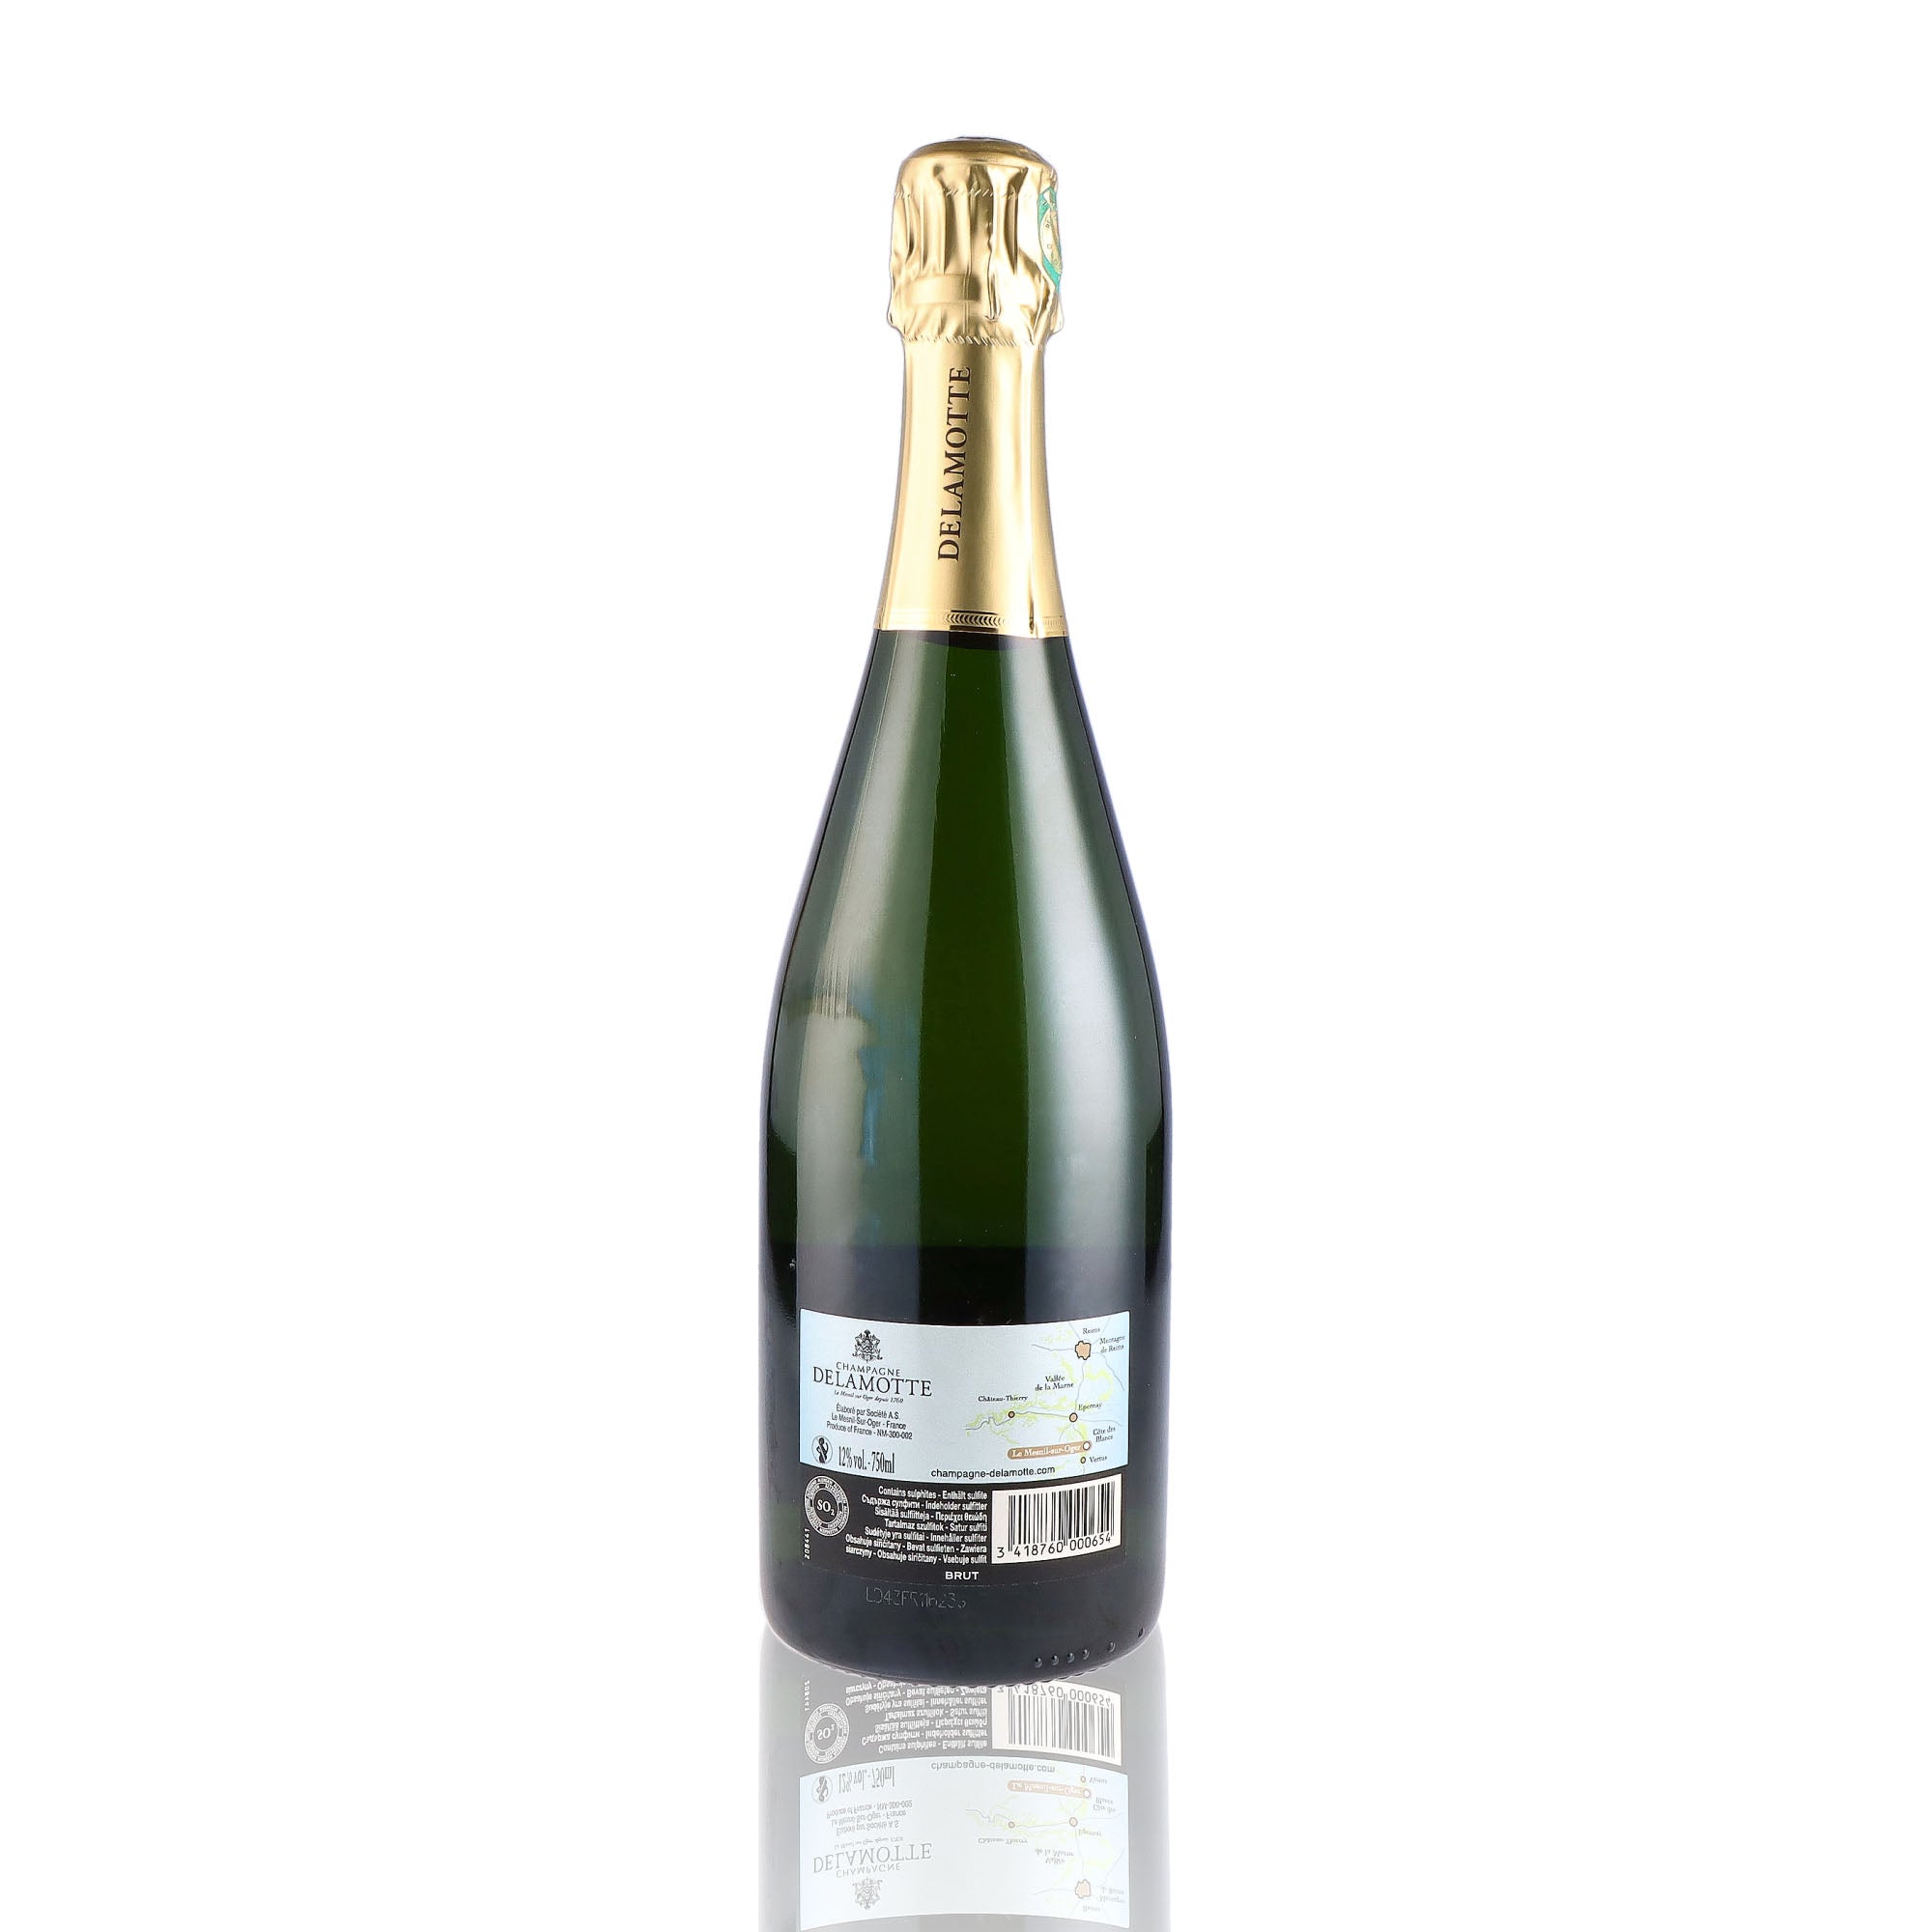 Une bouteille de champagne de la marque Delamotte, de type brut.